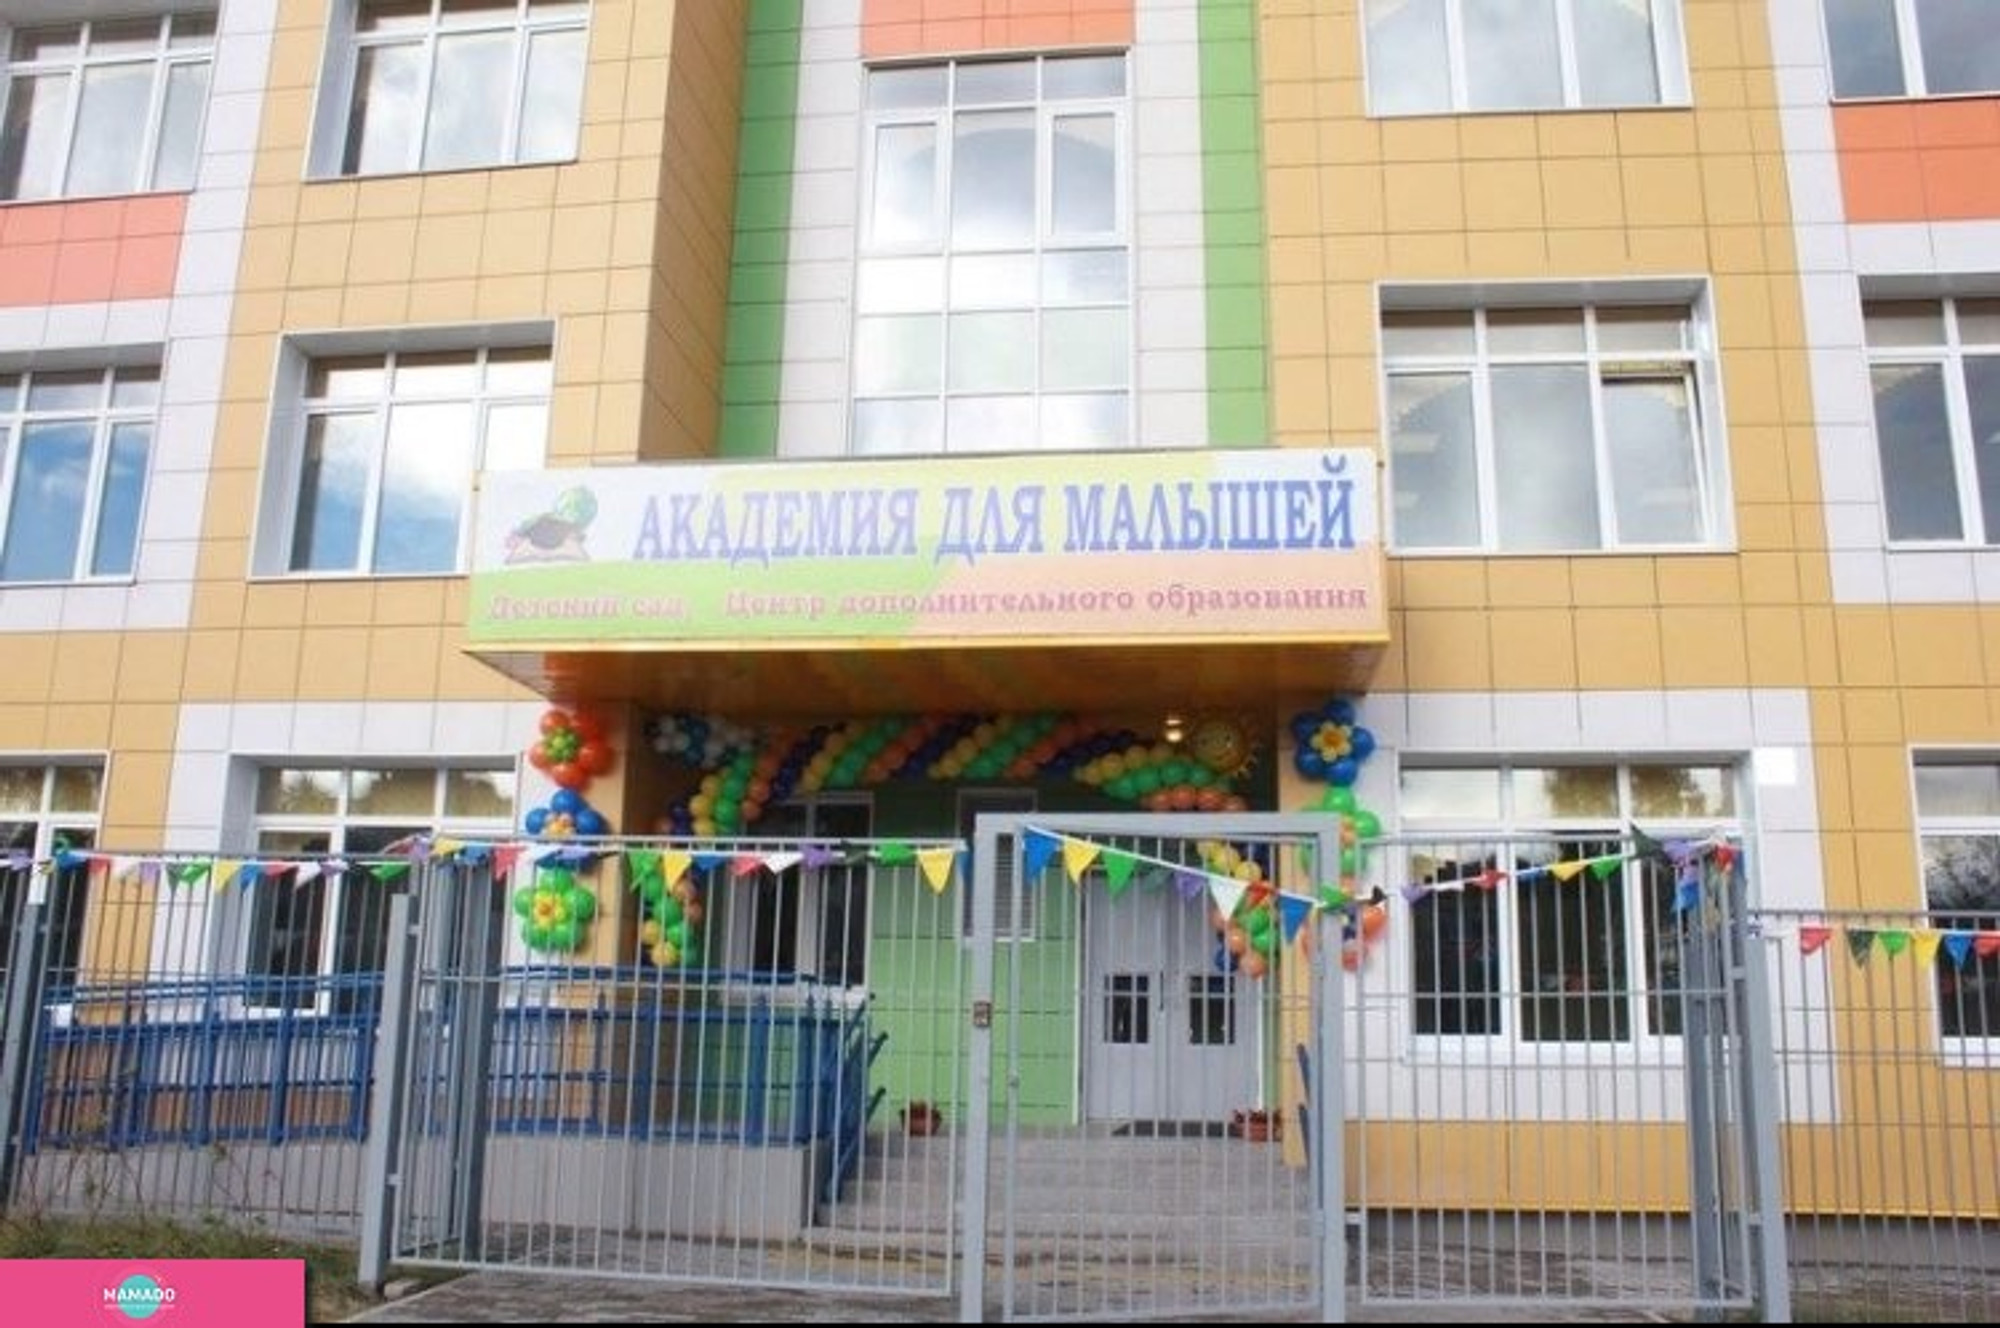 "Академия для малышей", детский сад и центр дополнительного образования для детей 2-12 лет, Путилково, Москва 